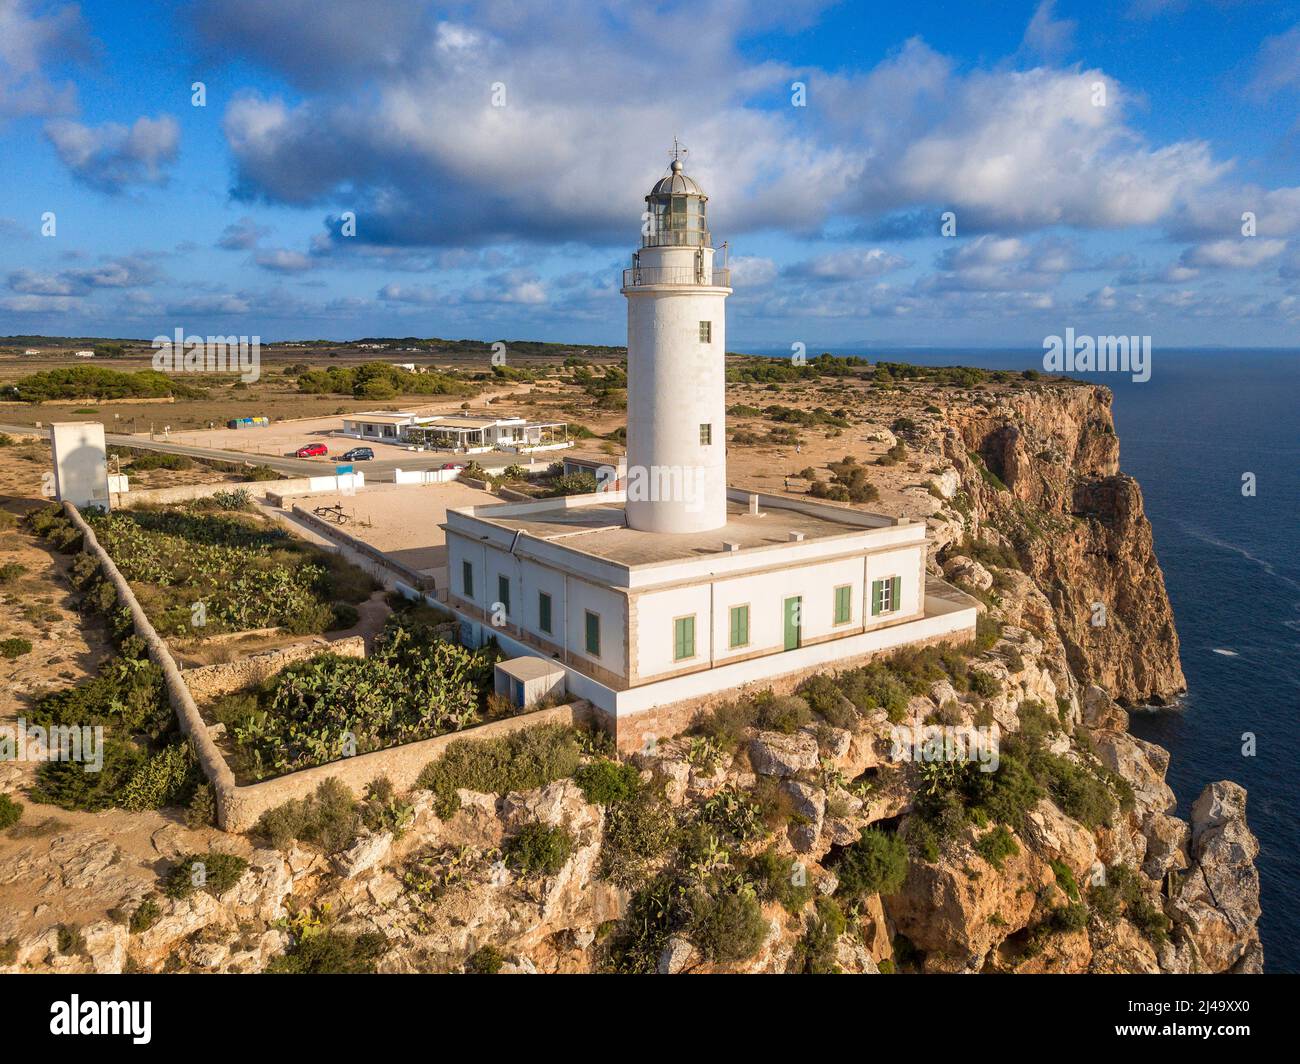 Veduta aerea del faro far de la Mola, Formentera, Isole Baleari, Spagna Foto Stock